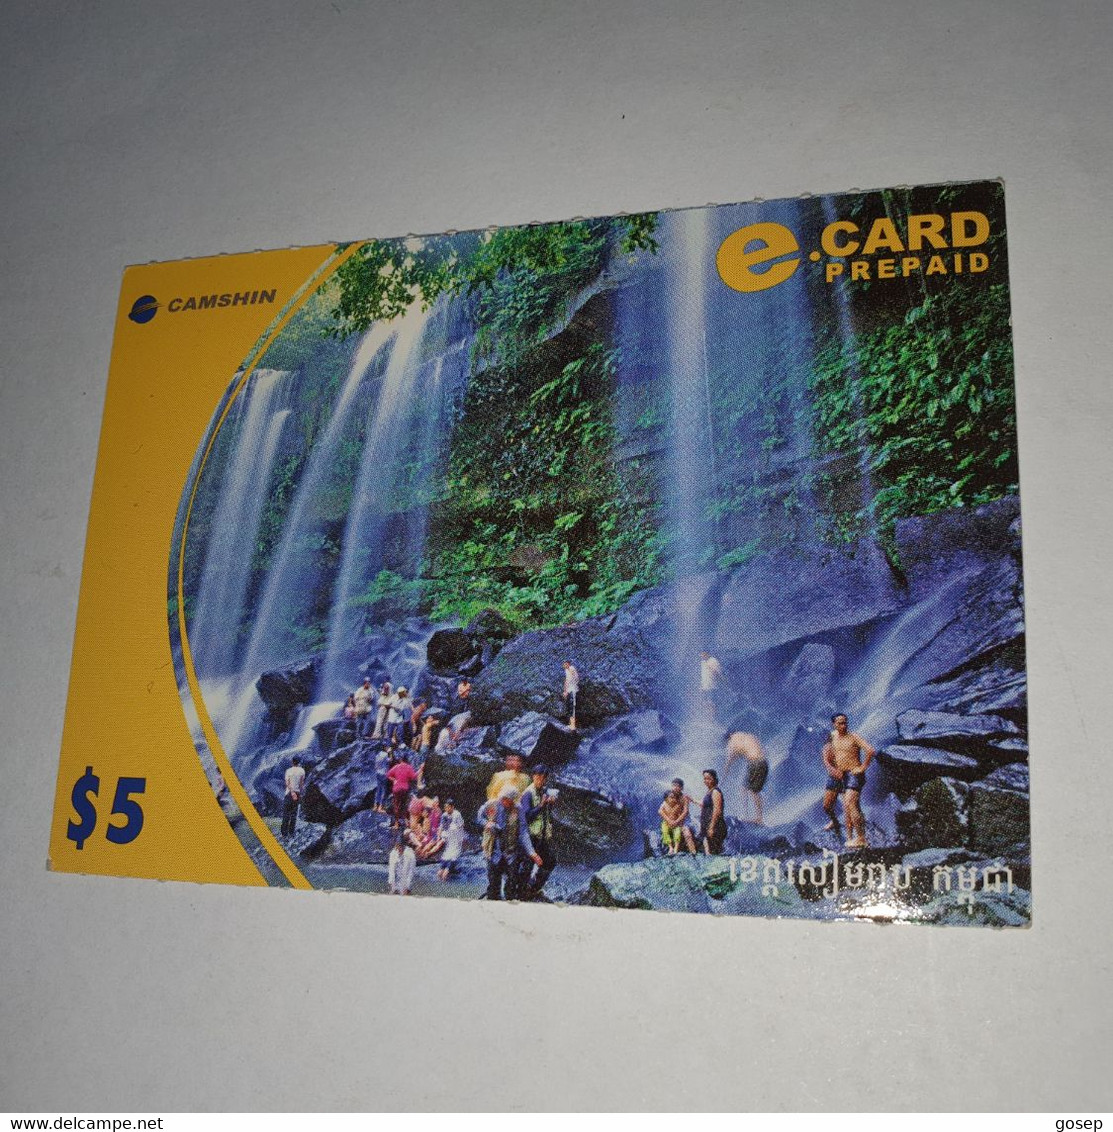 Cambodia-(KH-CAS-REF-0009)-cambodian Scenery-(29)-(012-637-241-6547)-(31/12/2006)-($5)-used Card+1card Prepiad - Cambodia